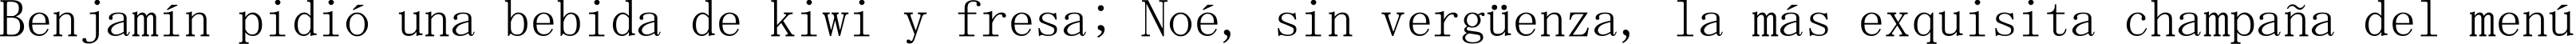 Пример написания шрифтом MS Mincho текста на испанском